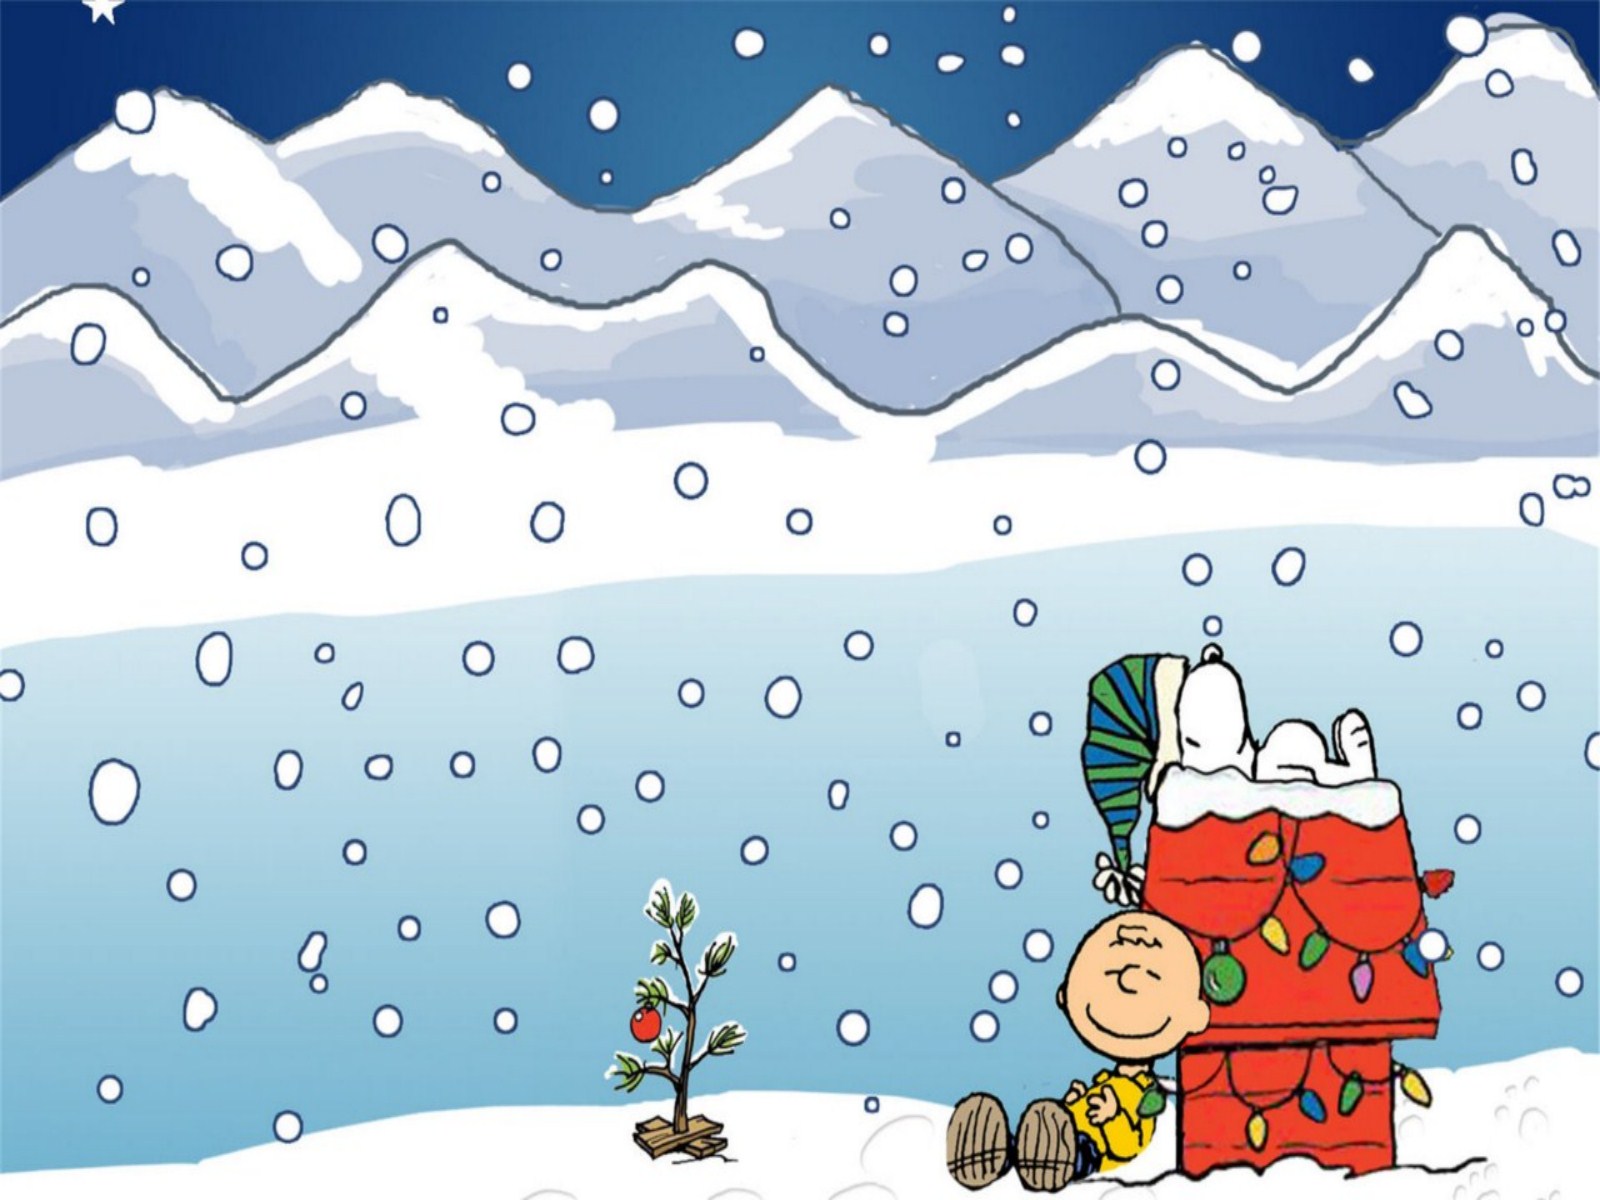 スヌーピークリスマス壁紙,漫画,冬,雪,クリスマス・イブ,サンタクロース